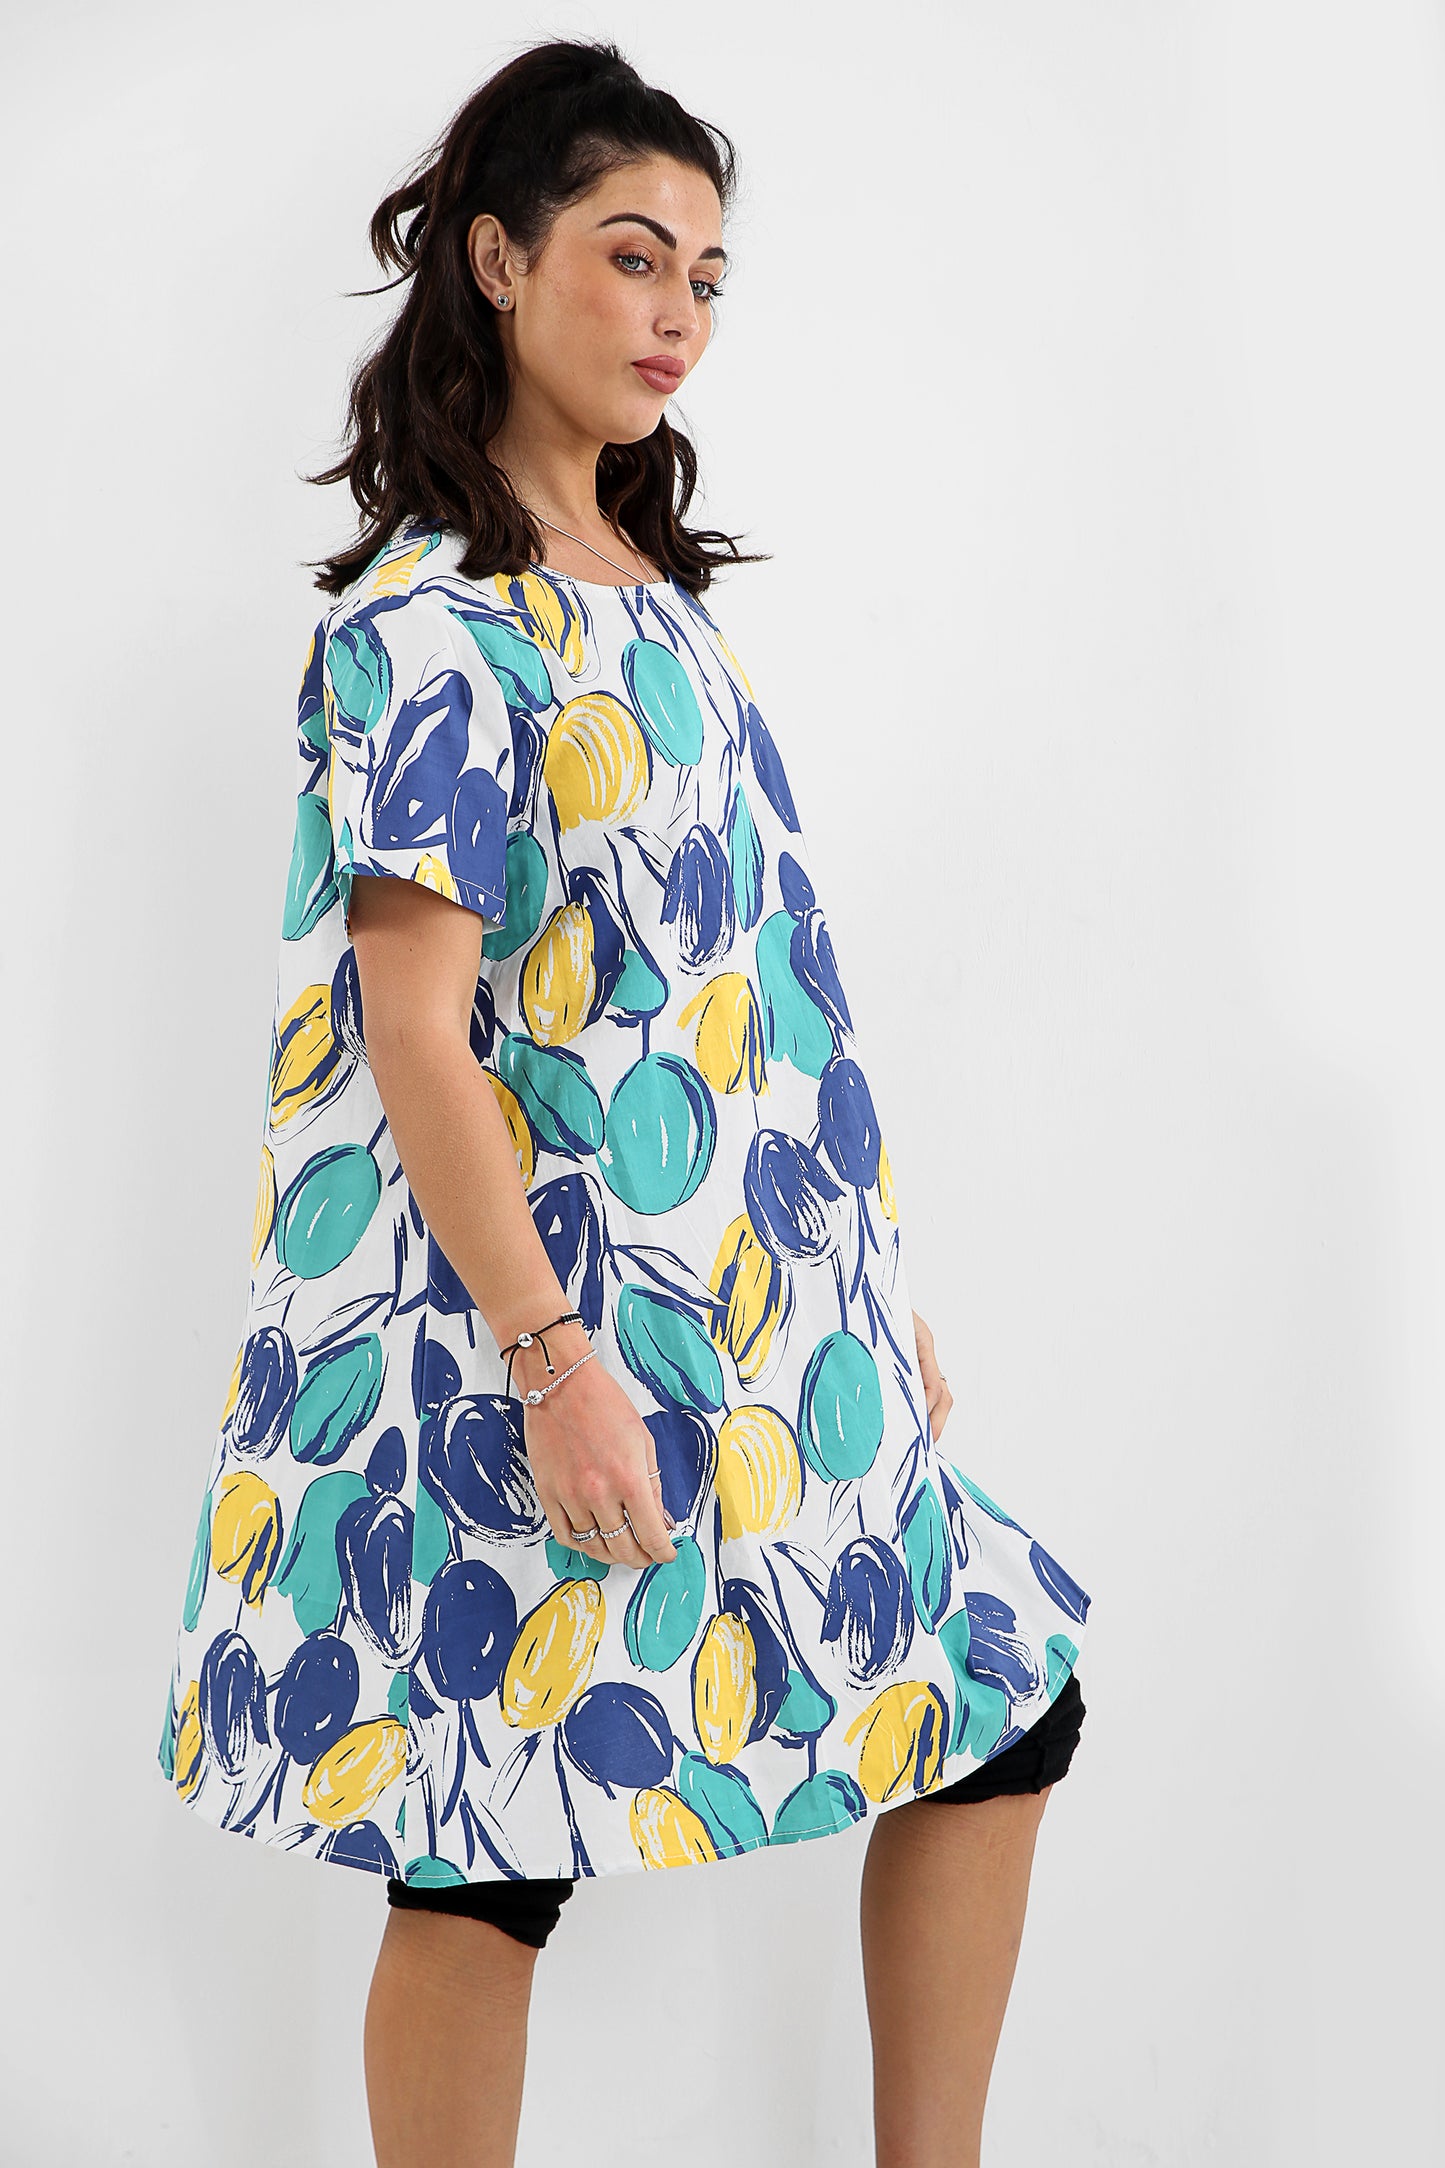 Vestido túnica colorido com inspiração em frutas com casca